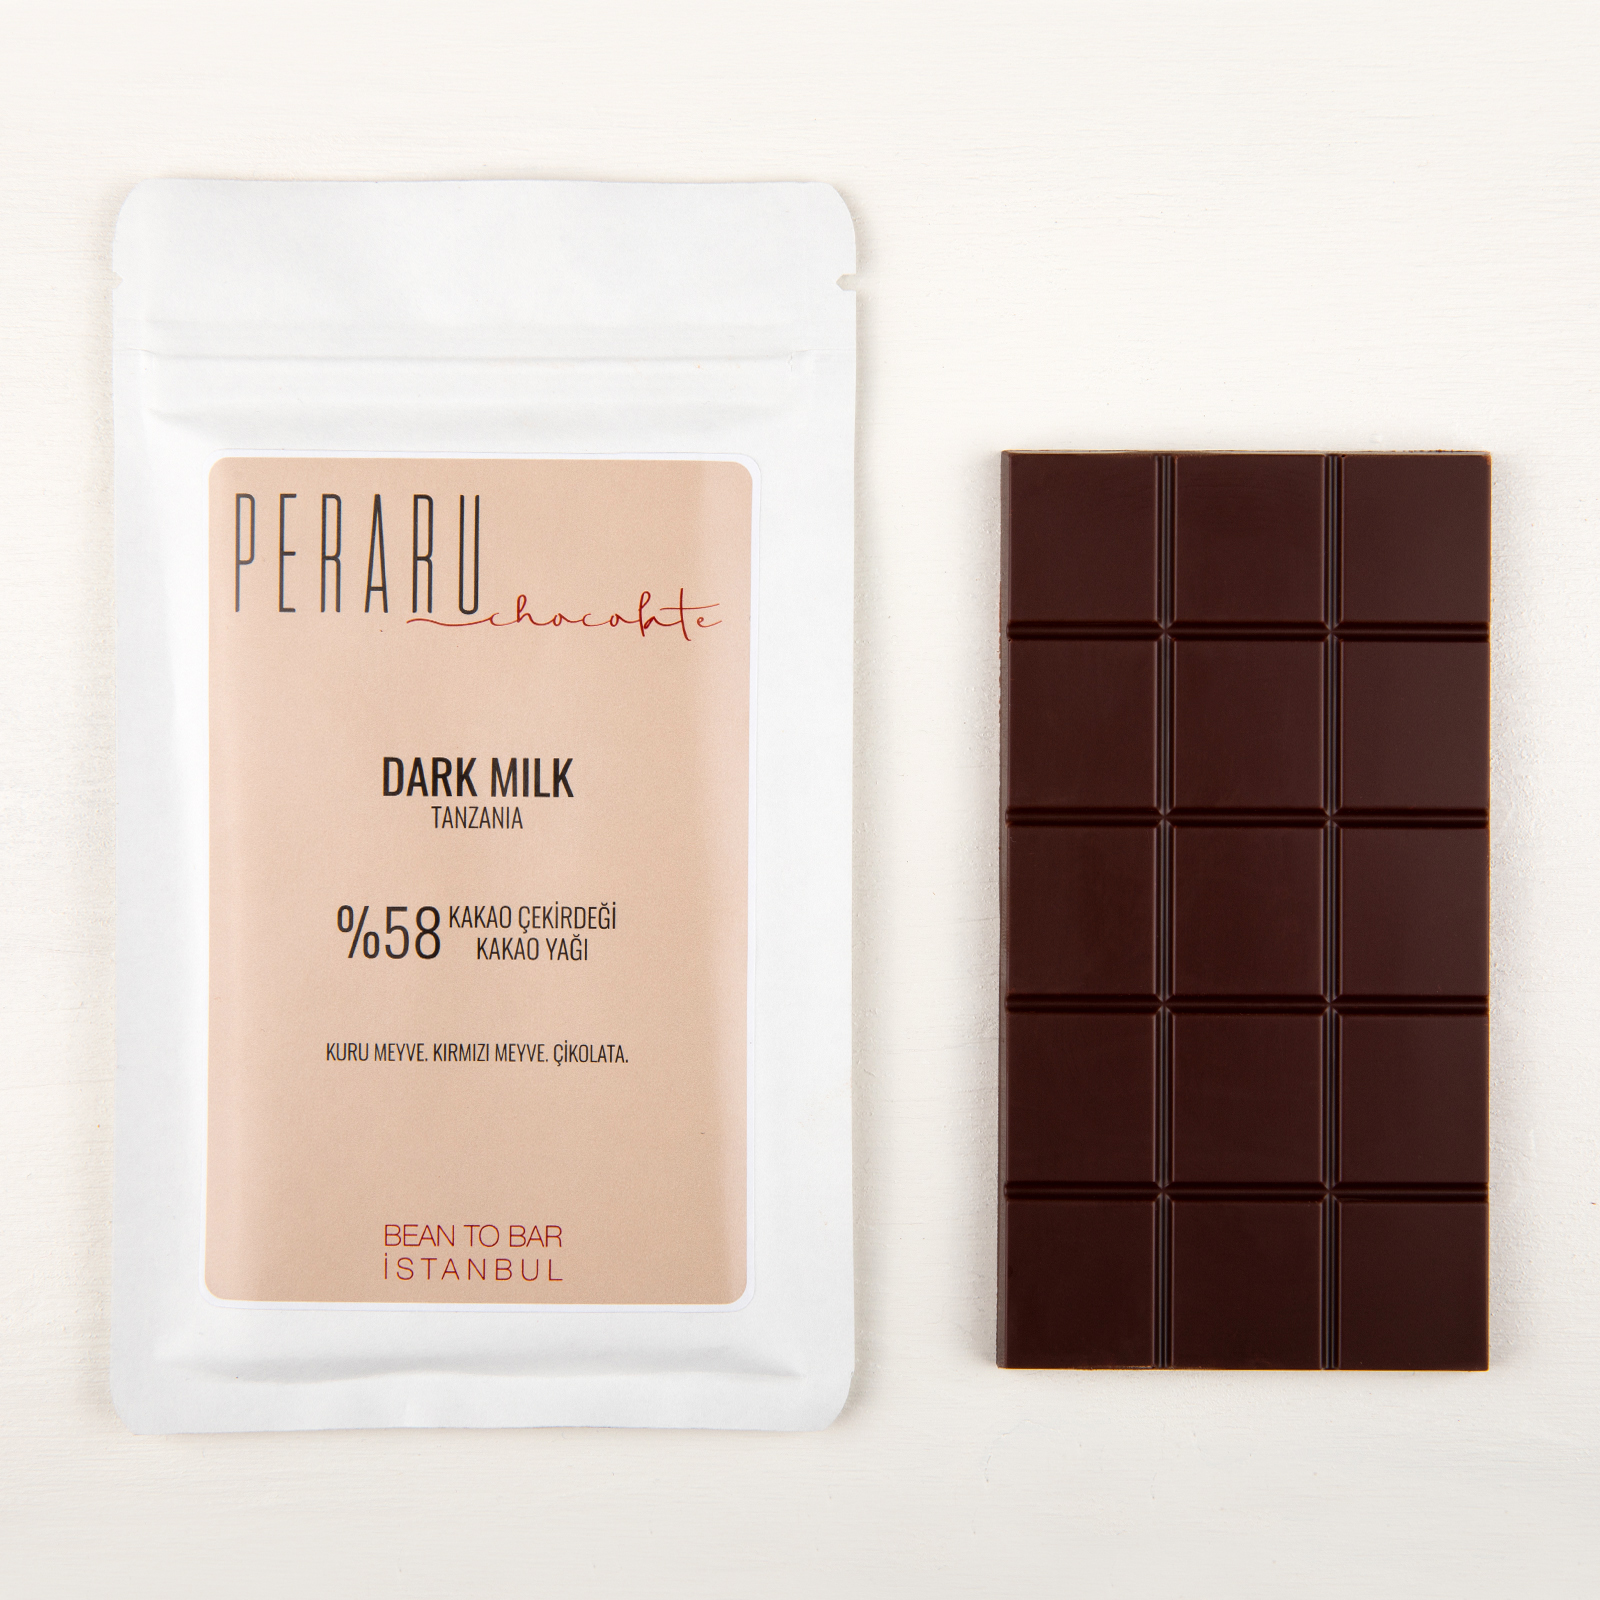 Bean to Bar chocolate DARK MILK 58% kakao çekirdeği oranı yüksek sütlü